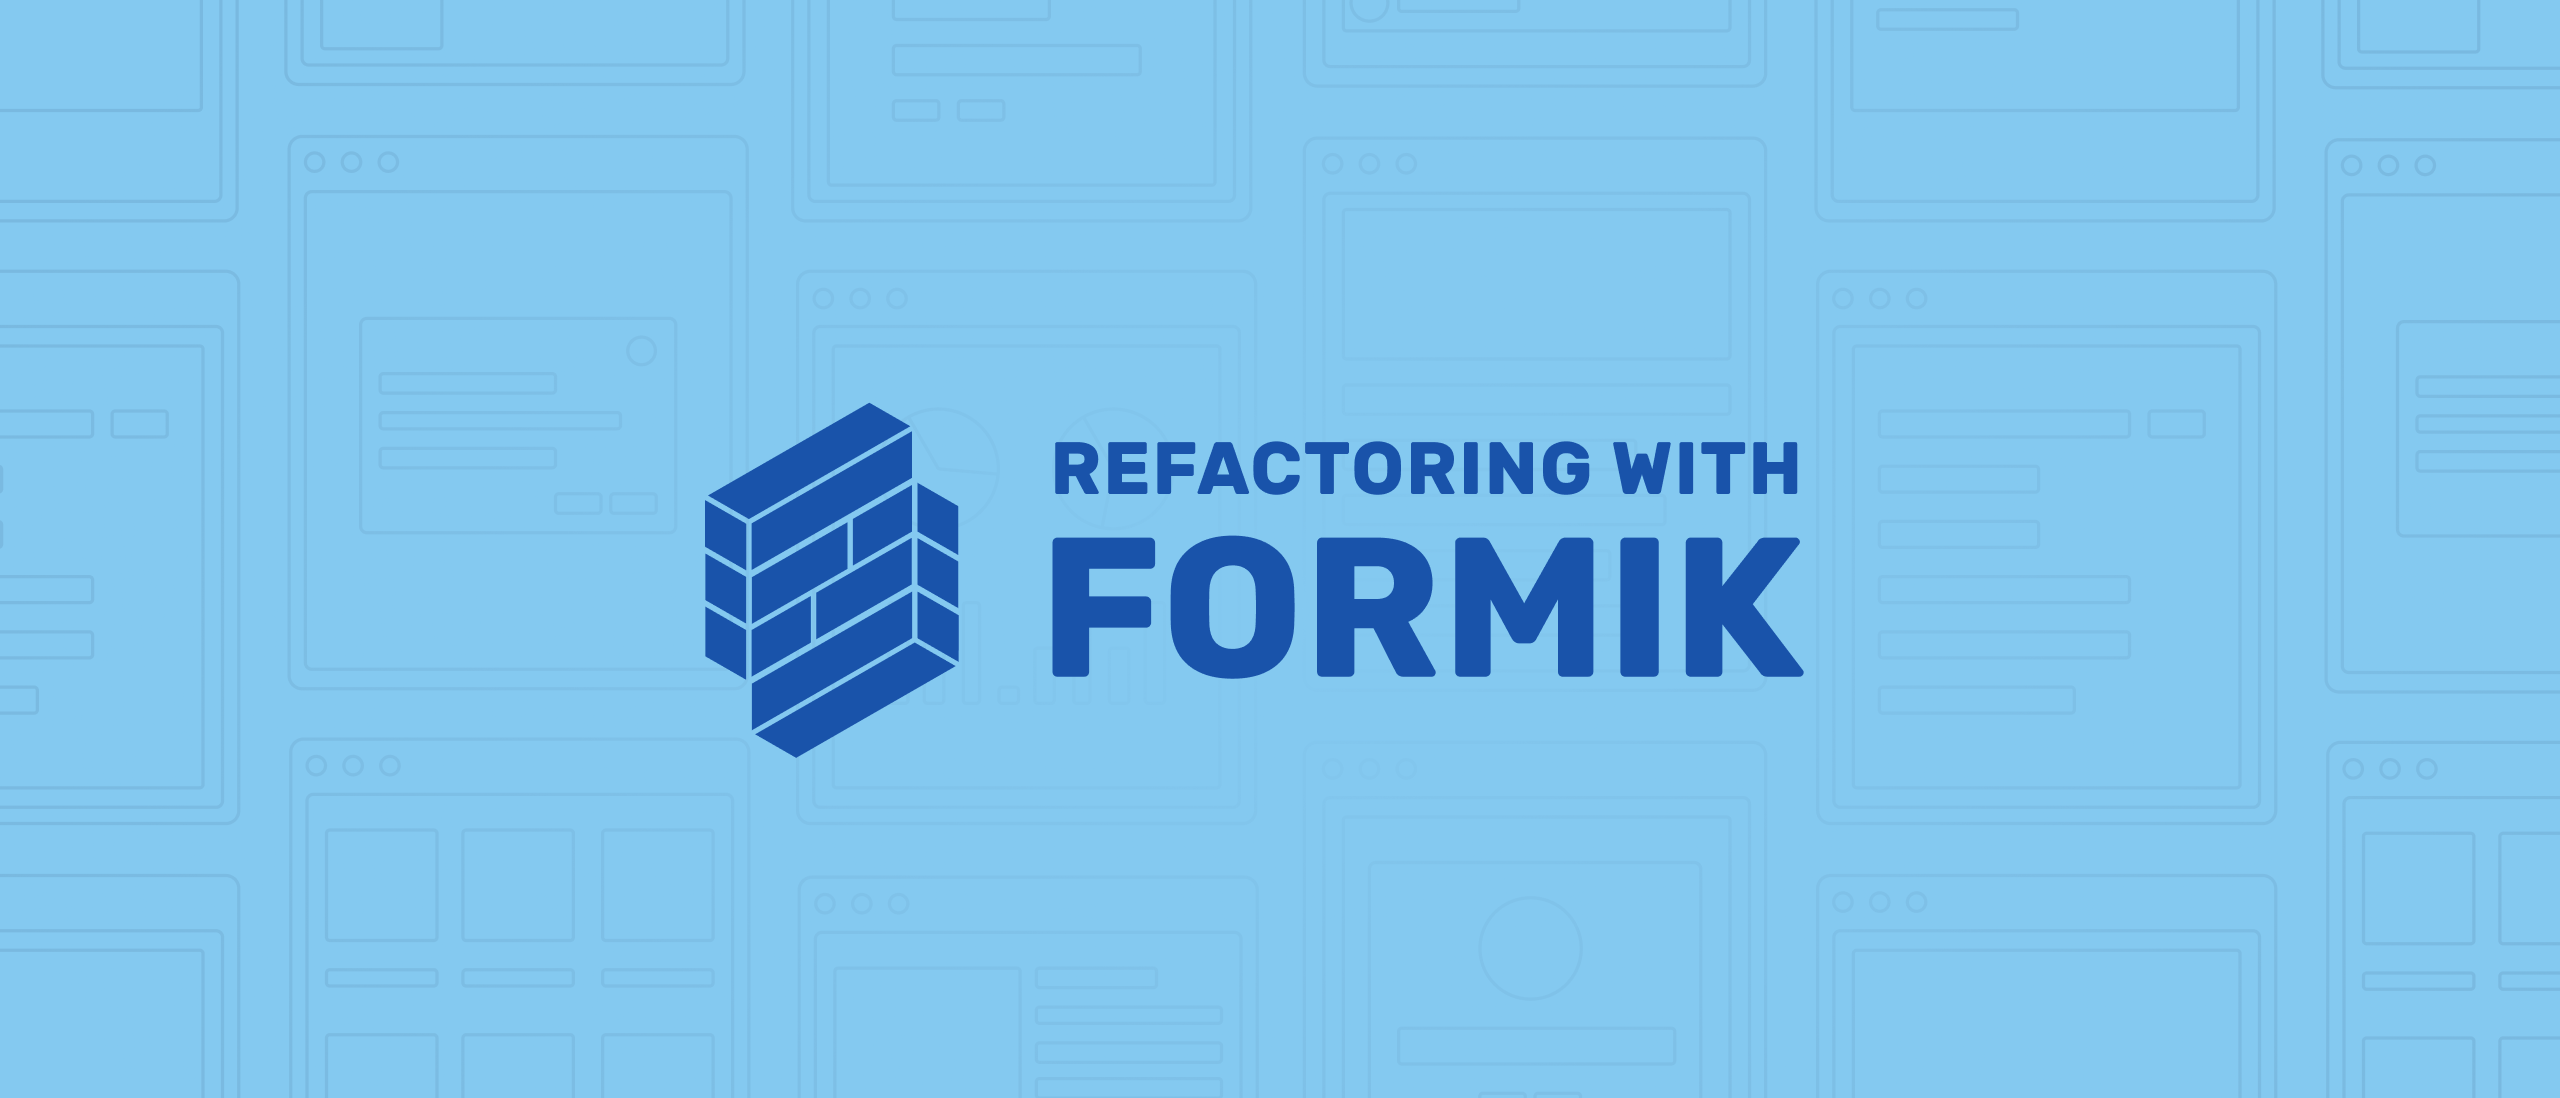 FormikでよりよいReactのフォームを構築する